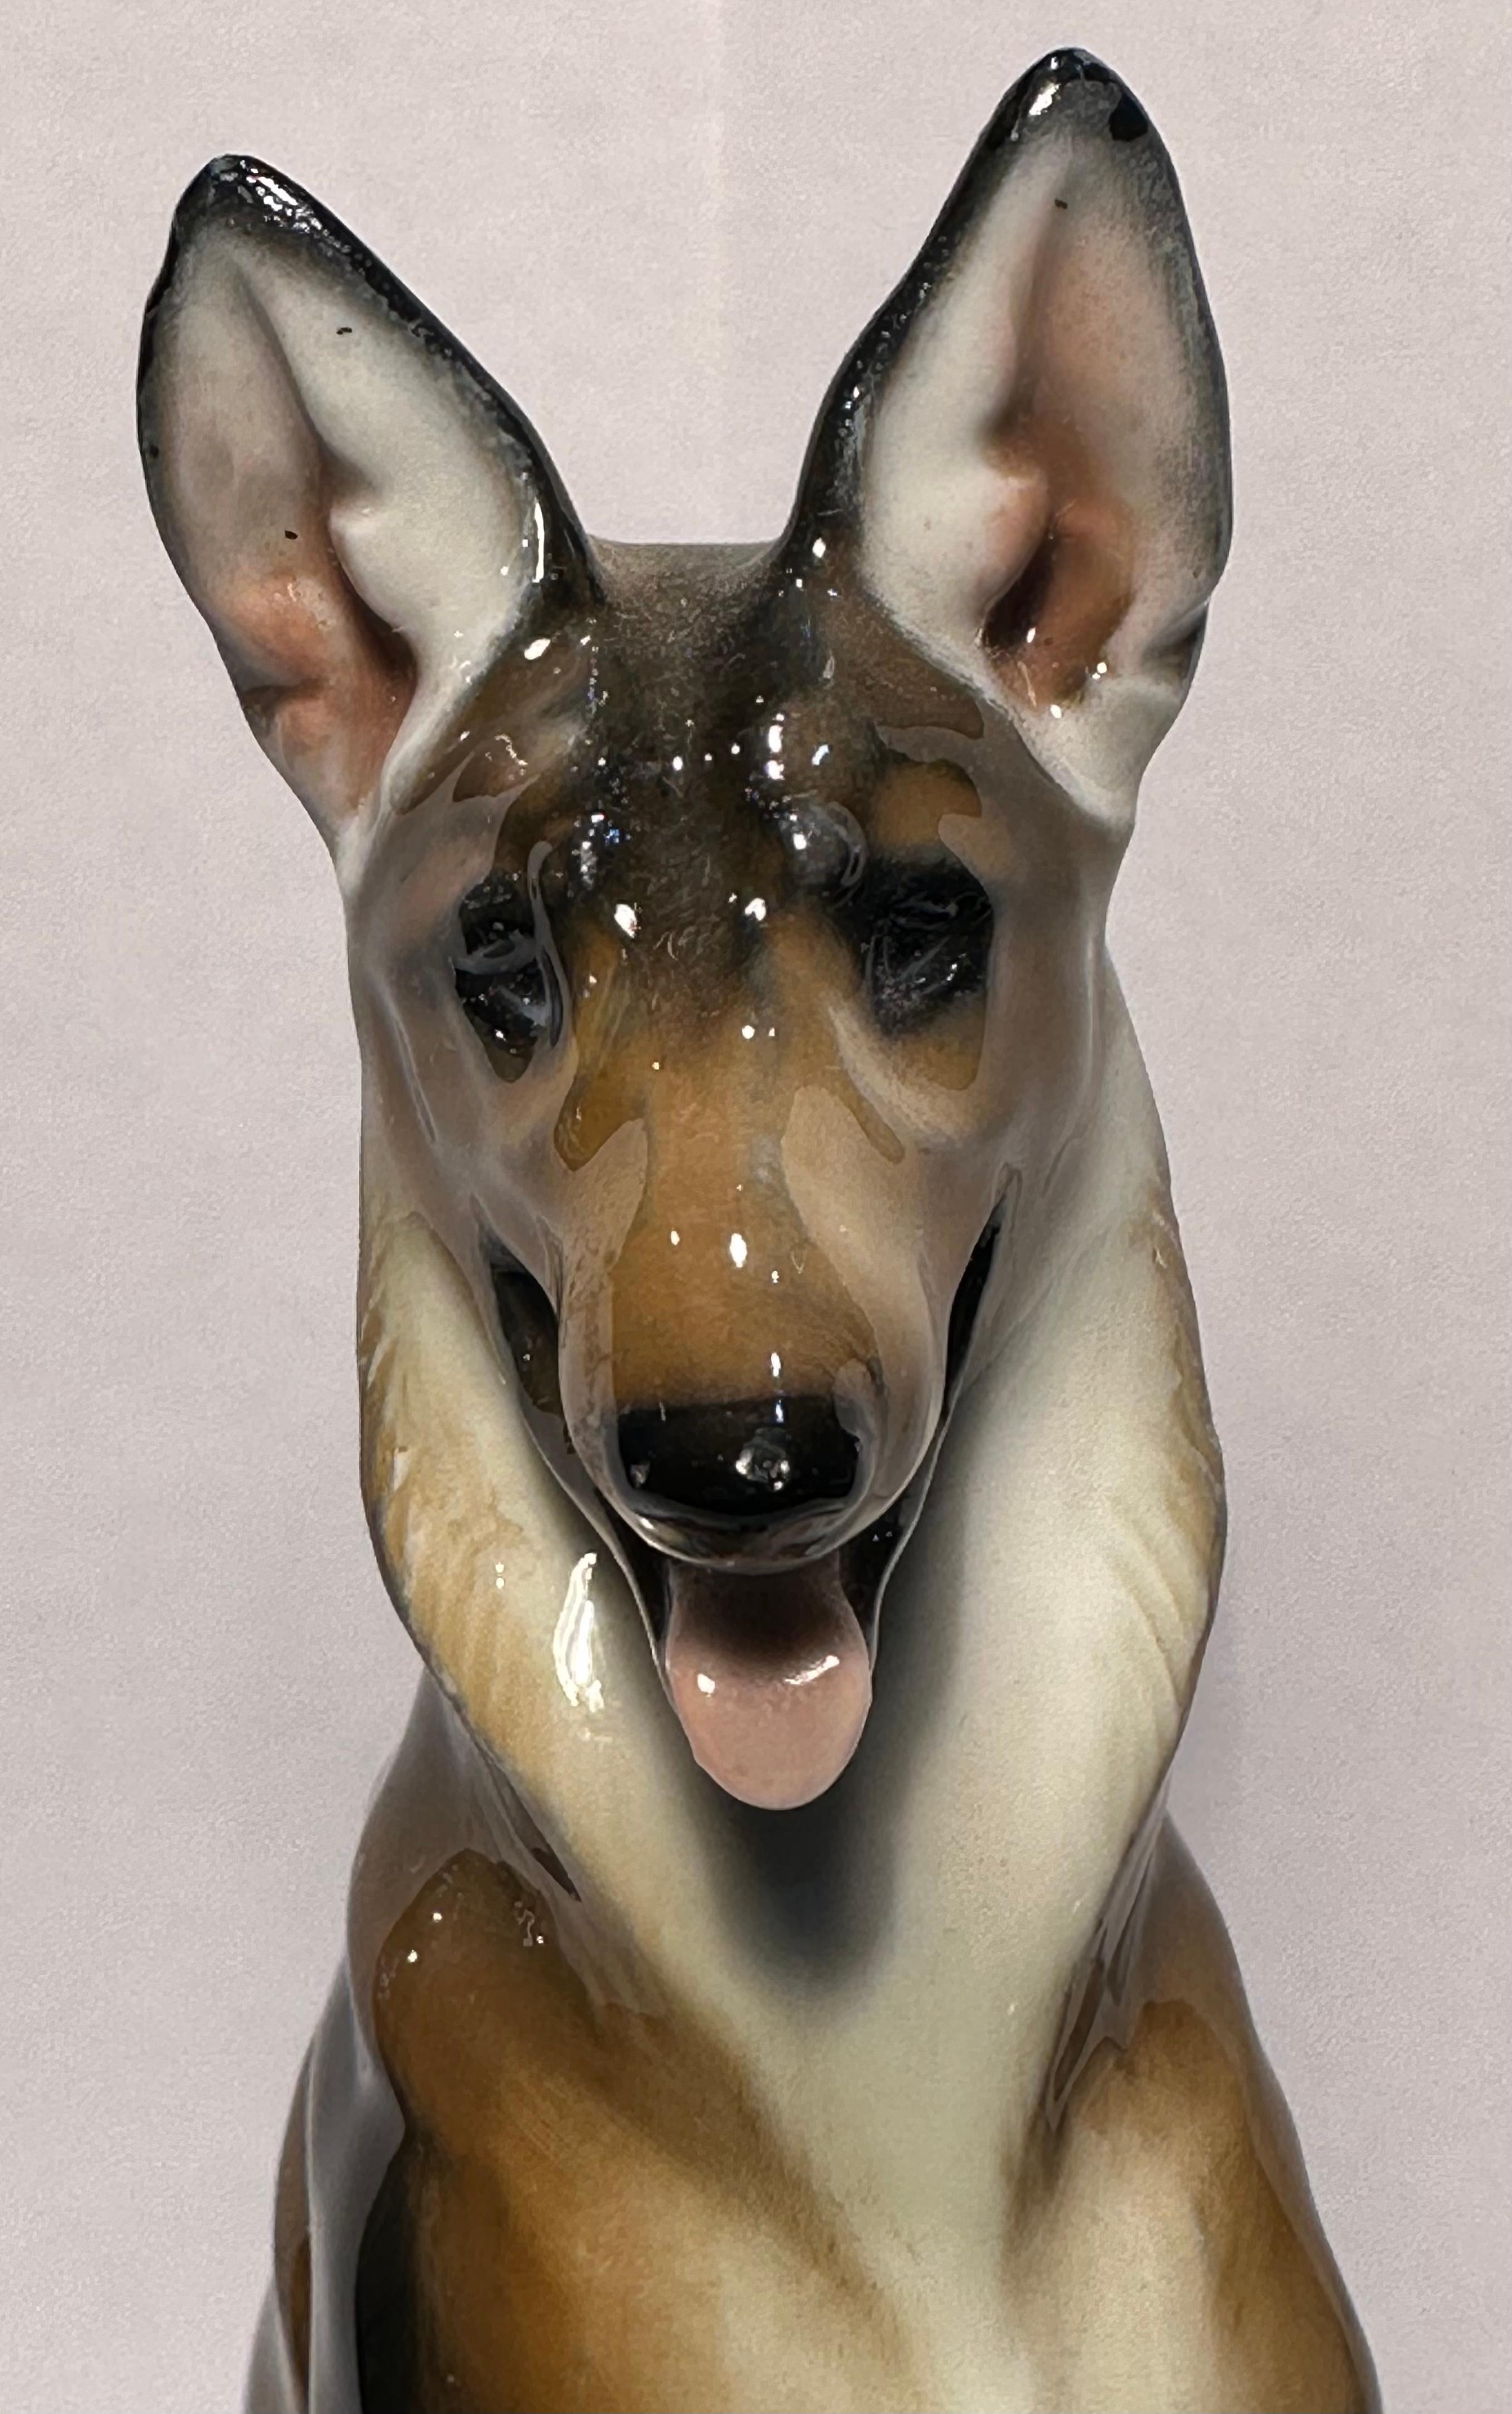 Rosenthal Porzellan Figur Deutscher Schäferhund, handgefertigt und handbemalt in Deutschland, von Künstler Theodor Karner für Rosenthal Porzellanfabrik. Der Hund wurde meisterhaft von Hand gefertigt und mit viel Liebe zum Detail bemalt.  Der